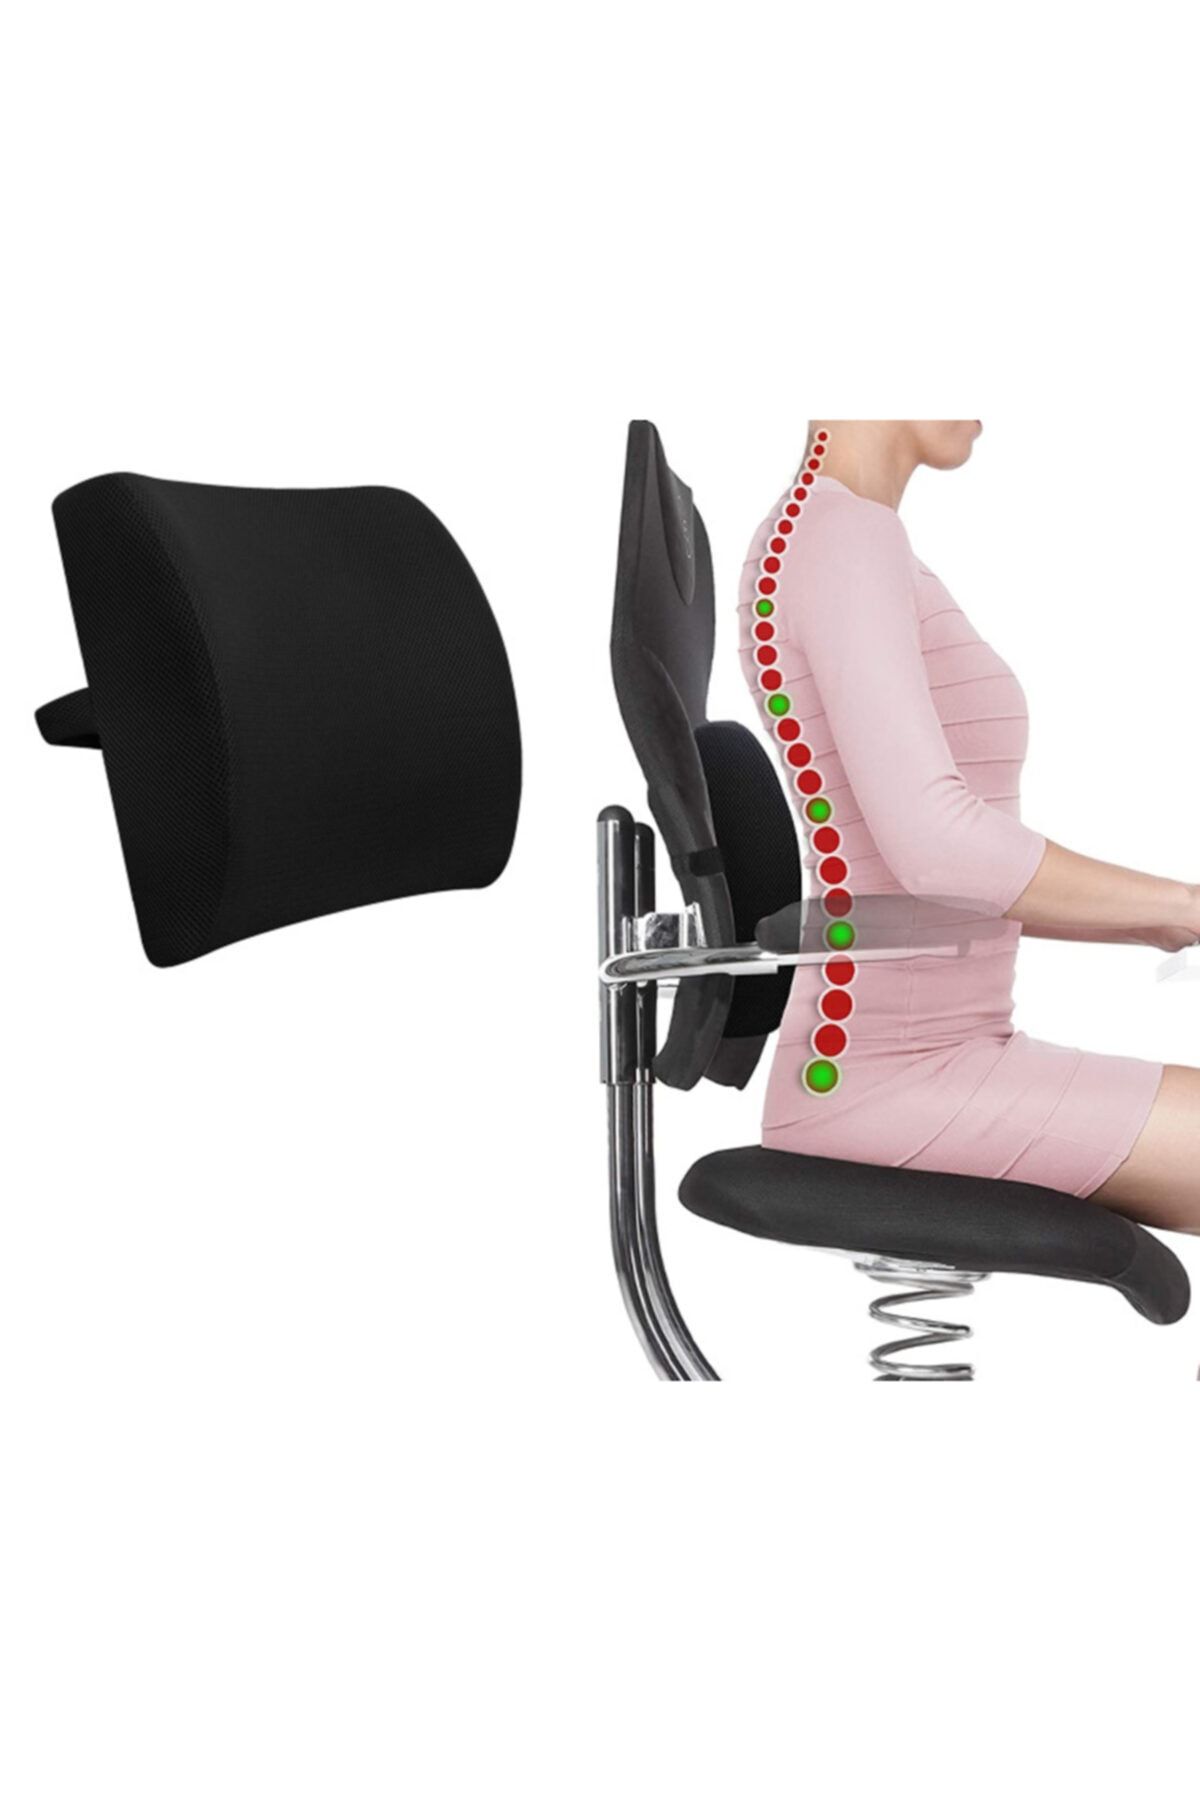 Ankaflex Ortopedik Sırt Minderi Araç Koltuk Sandalye Bel Yastığı Bel Desteği Bel Minderi Bel Minderi